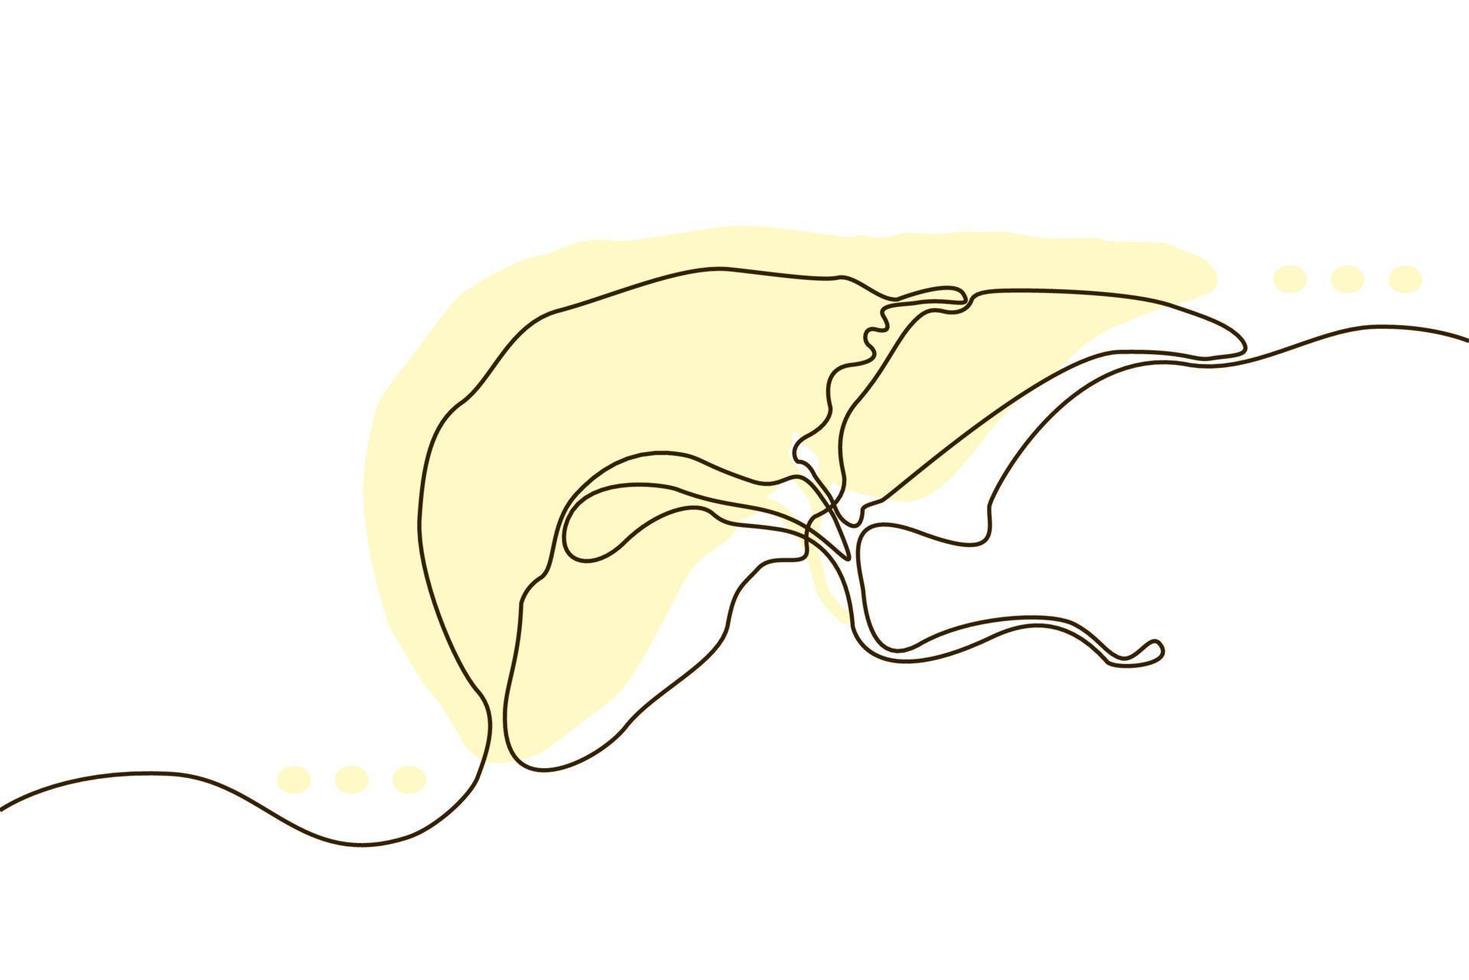 icono dibujado a mano de hígado dibujo de línea continua y silueta plana amarilla. órganos humanos. concepto de moda de medicina diseño de una sola línea. contorno imagen simple vector blanco y negro